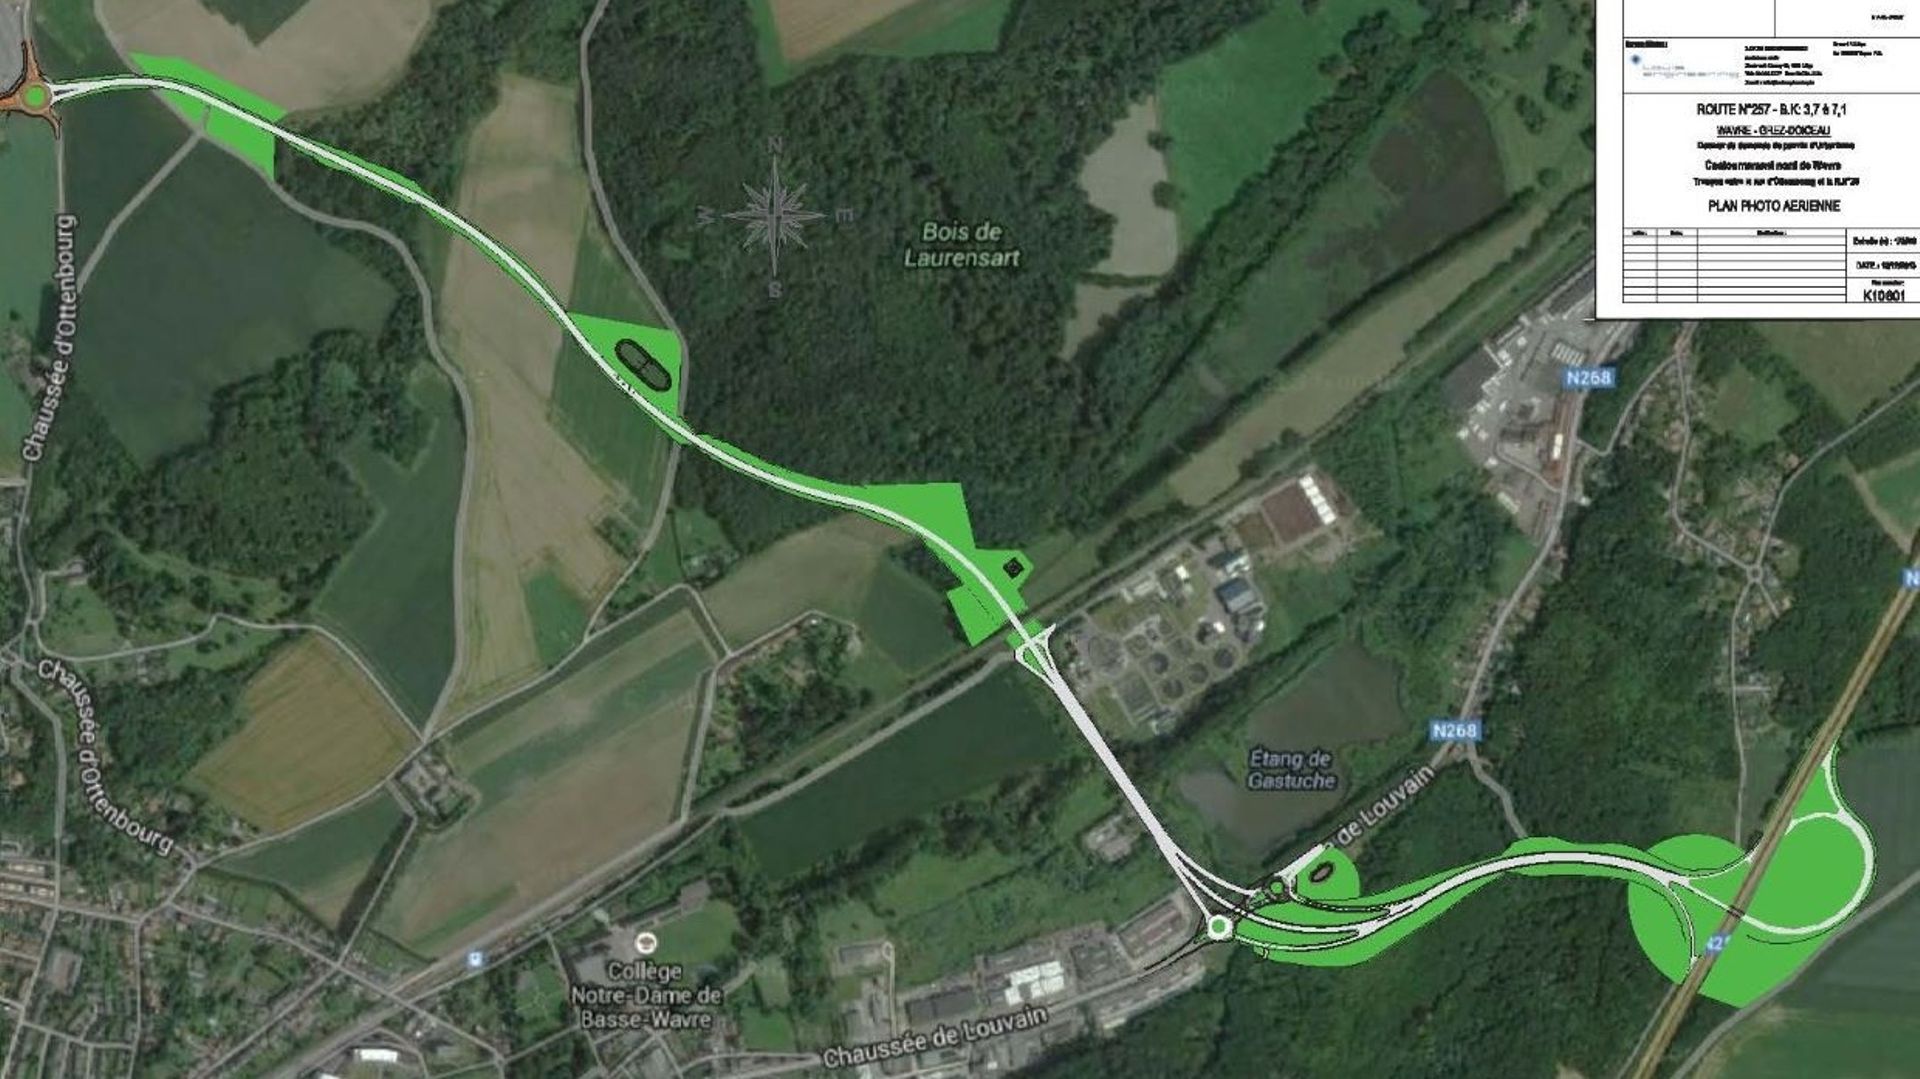 En haut à gauche, le rond-point situé près de GSK dans le zoning nord. La nouvelle route traversera des zones agricoles et forestières pour rejoindre la N25 à Grez-Doiceau.